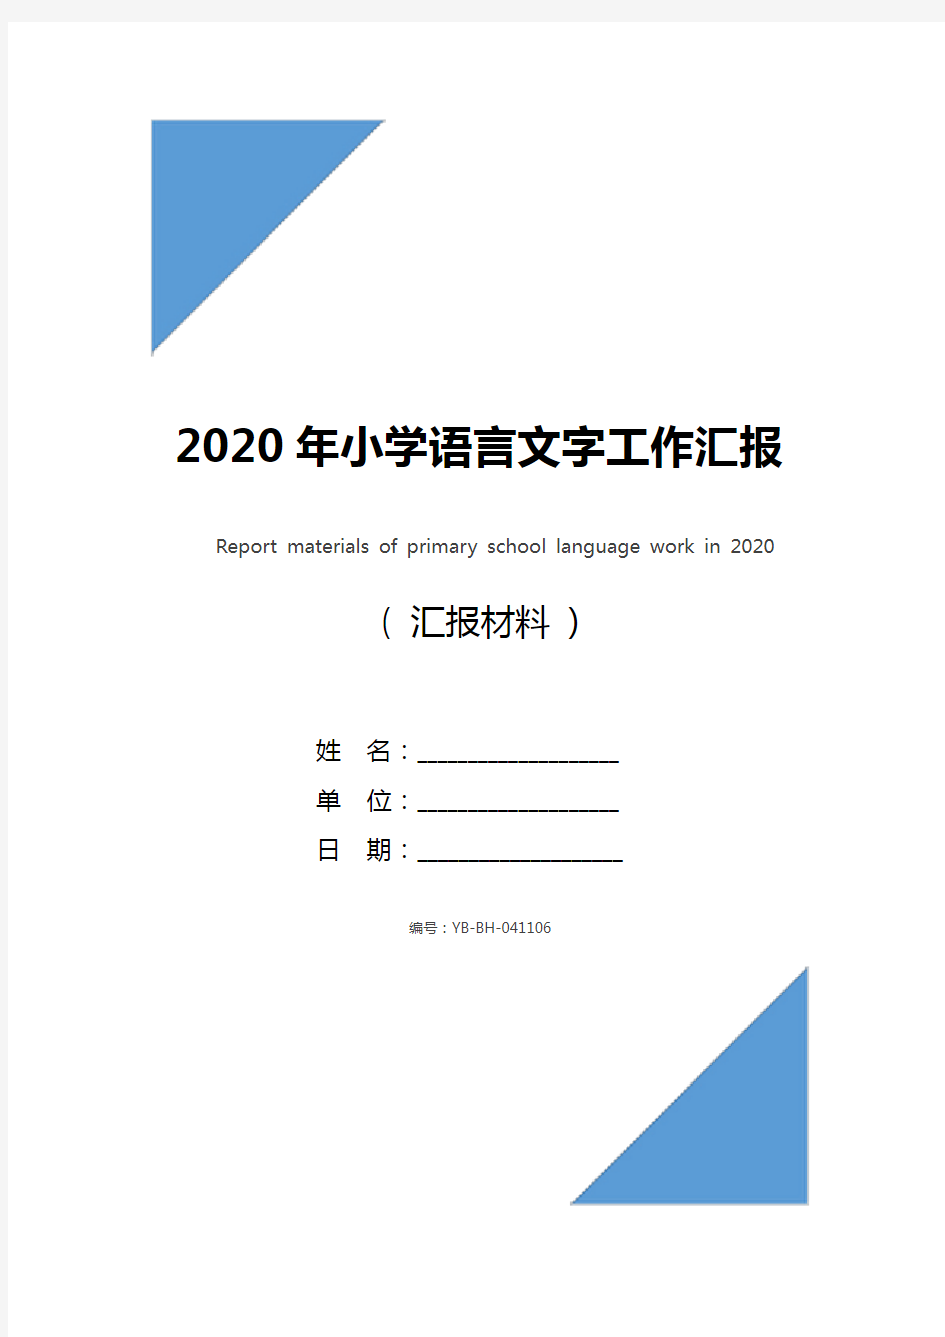 2020年小学语言文字工作汇报材料